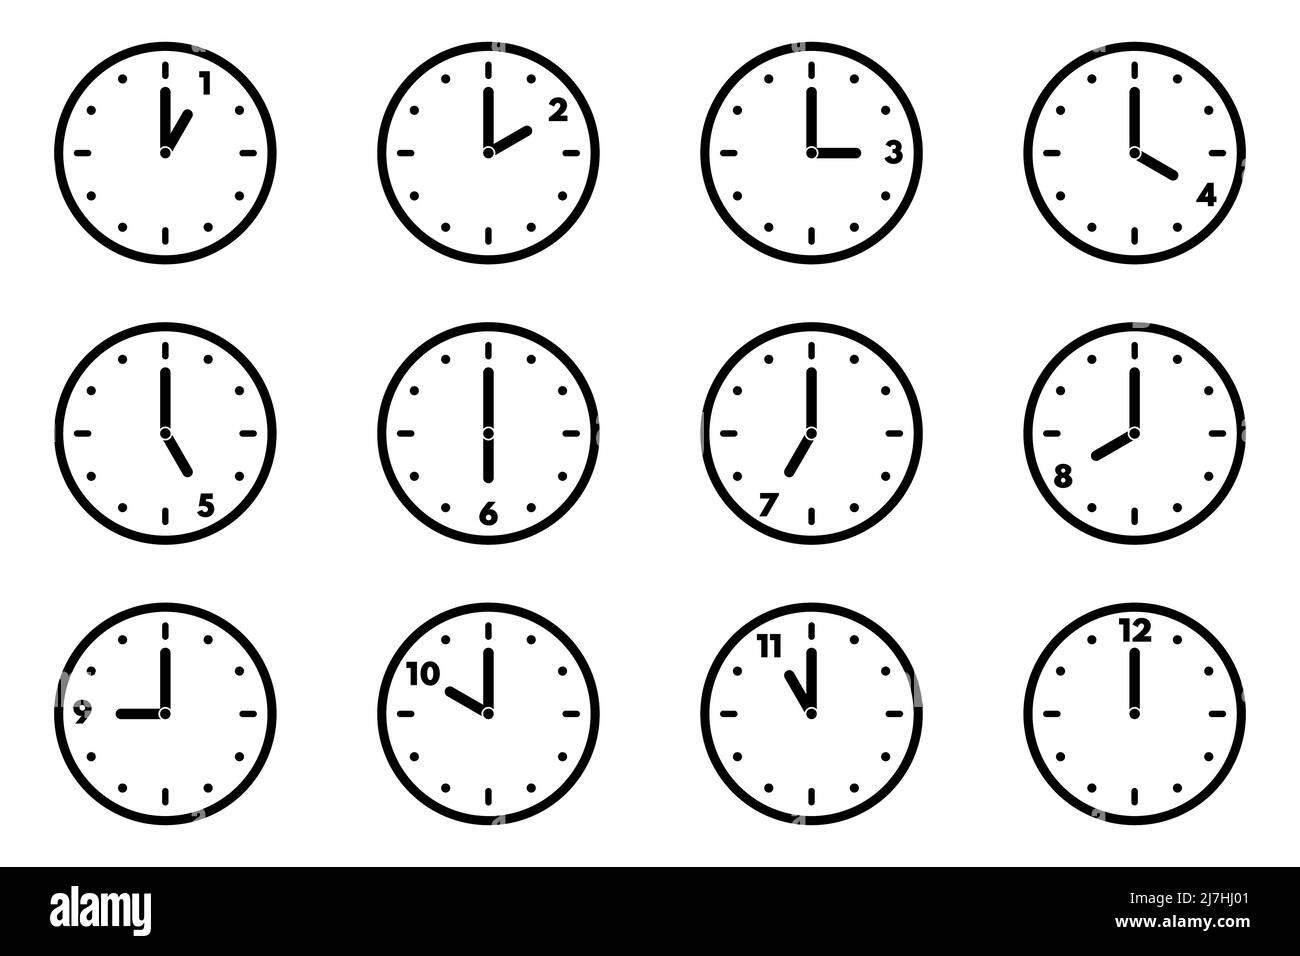 Reloj de 12 horas Imágenes de stock en blanco y negro - Alamy